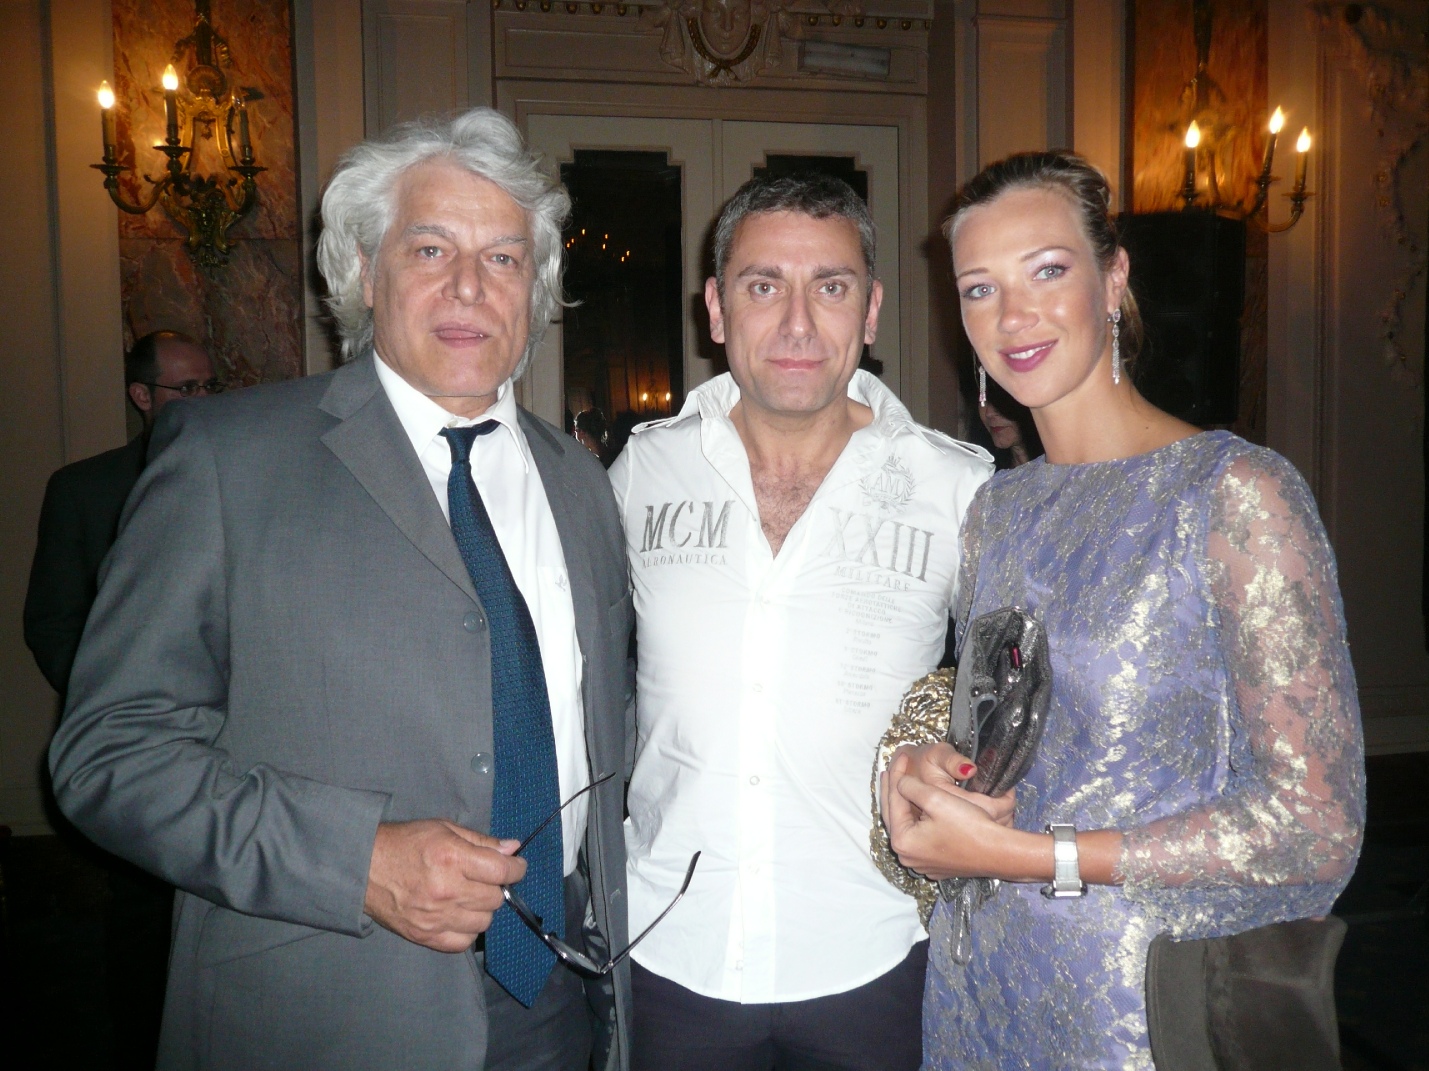 Max Leonida with Gerardo Placido and Ludmilla Radchenko at the 2010 Cannes Film Festival